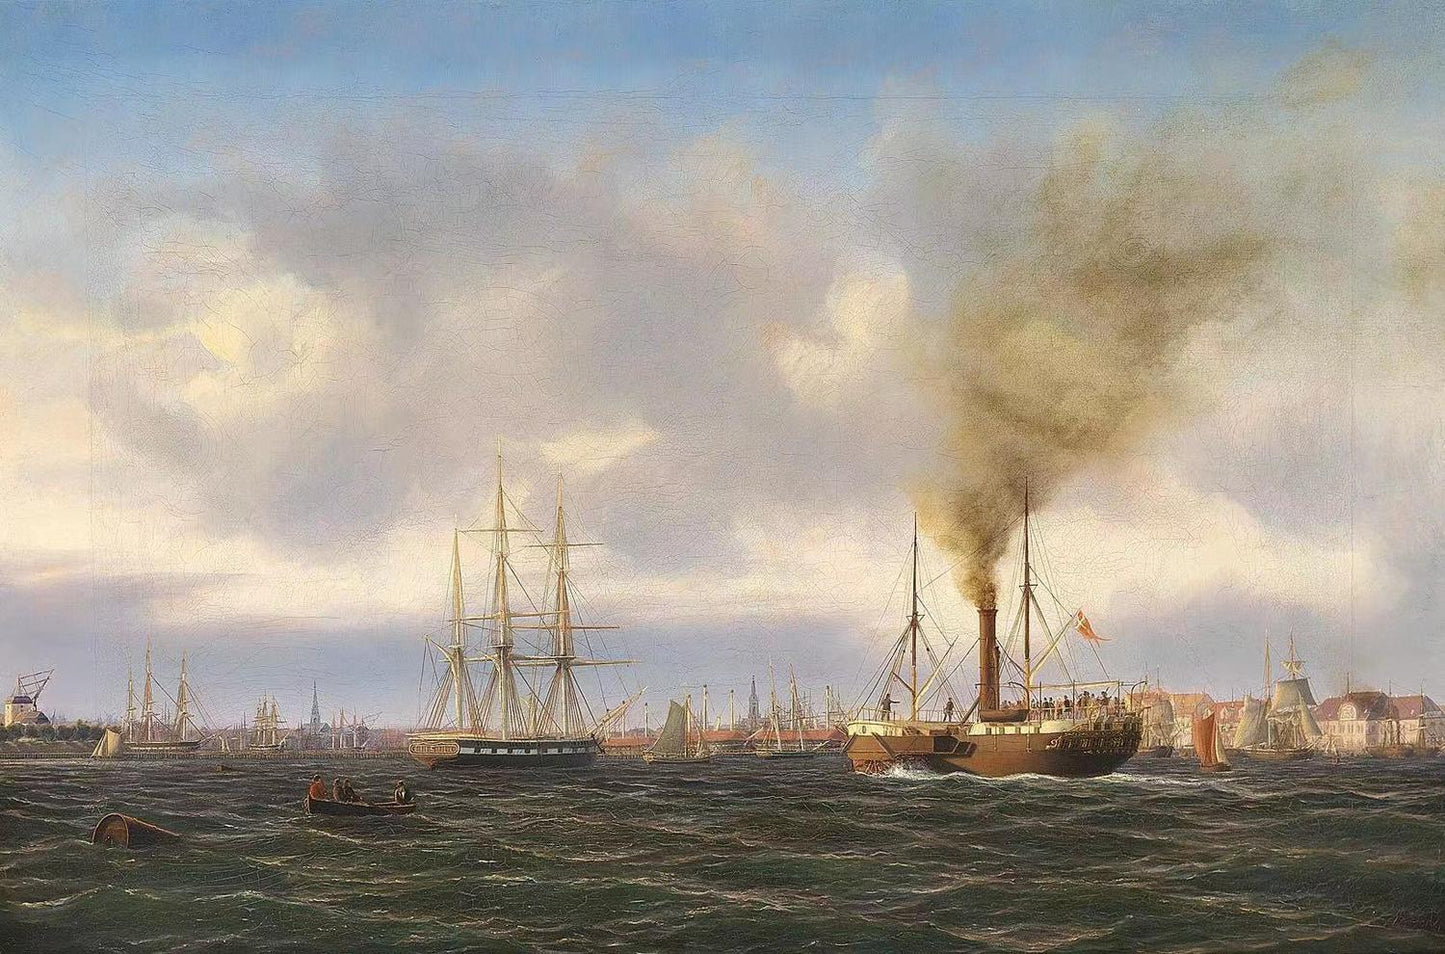 Dampskibet Skirner i Københavns Havn,Carl Bille,1815-1898